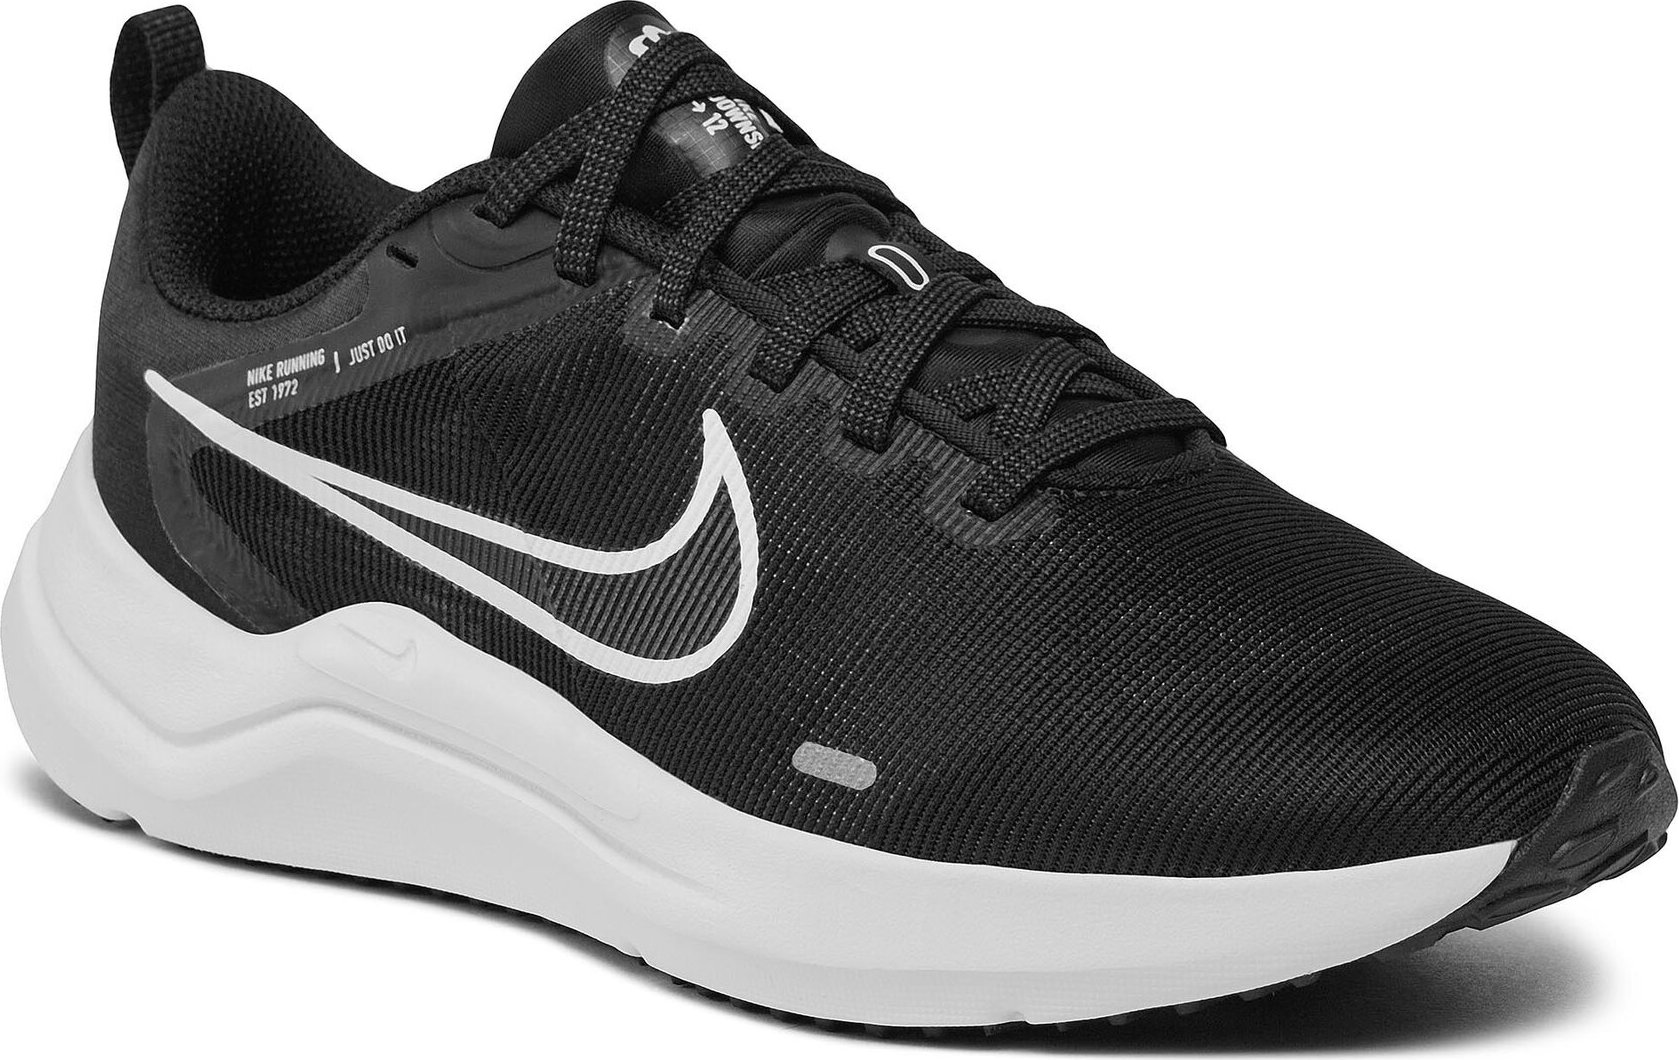 Boty Nike Downshifer 12 DD9294 001 Black/White/Smoke Grey